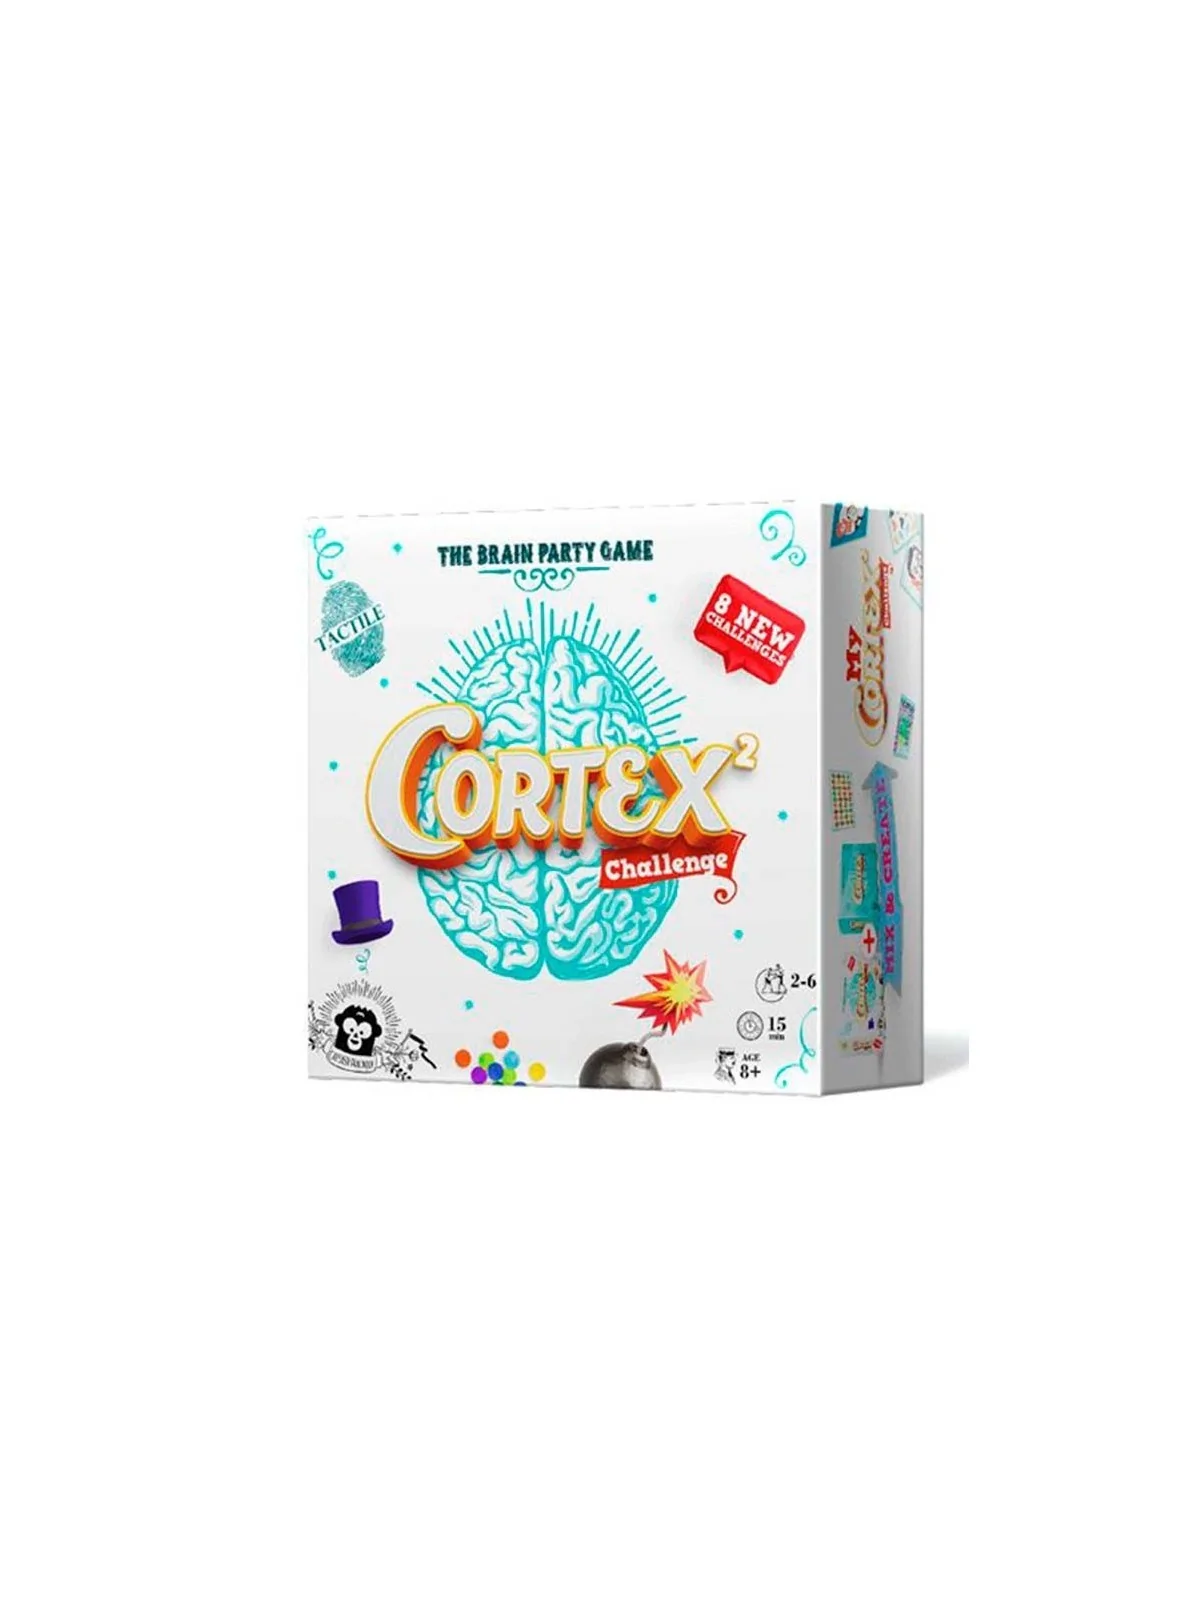 Comprar Cortex 2 Challenge barato al mejor precio 14,39 € de Zygomatic